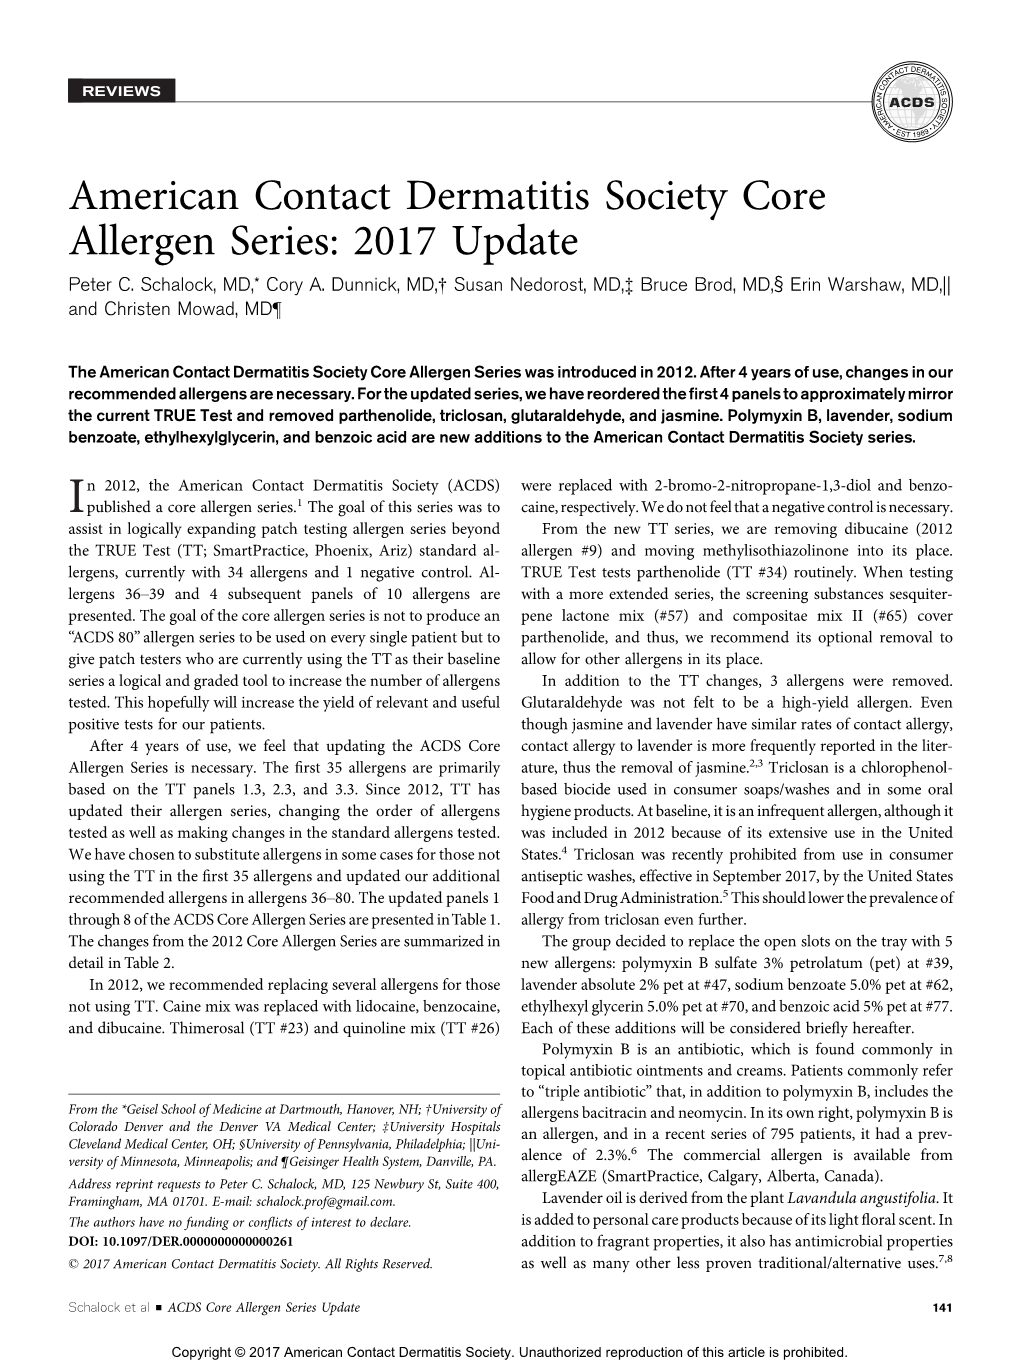 American Contact Dermatitis Society Core Allergen Series: 2017 Update Peter C